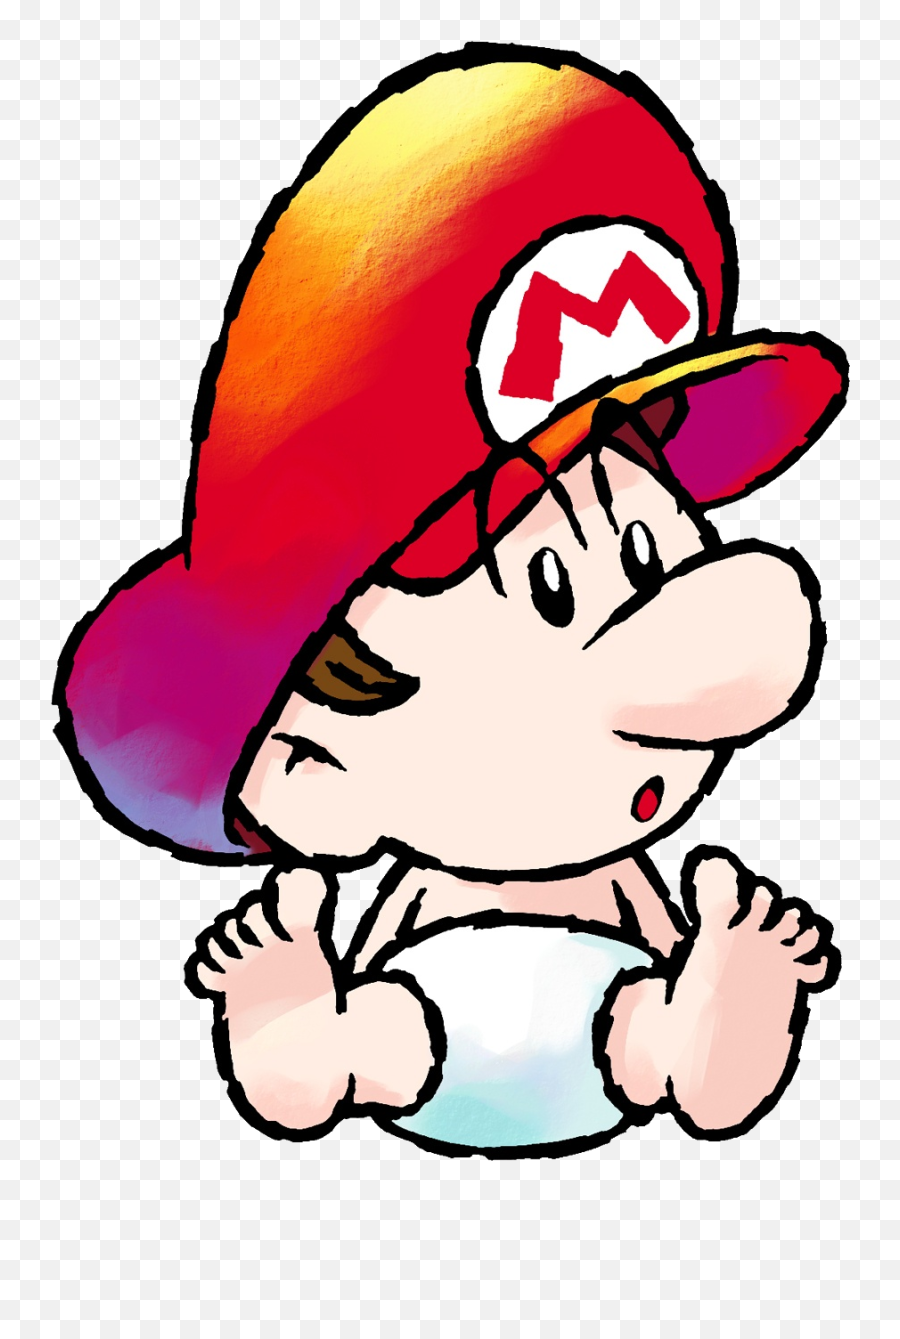 Baby Mario - Baby Mario Yoshi Island Png,Yoshi Icon